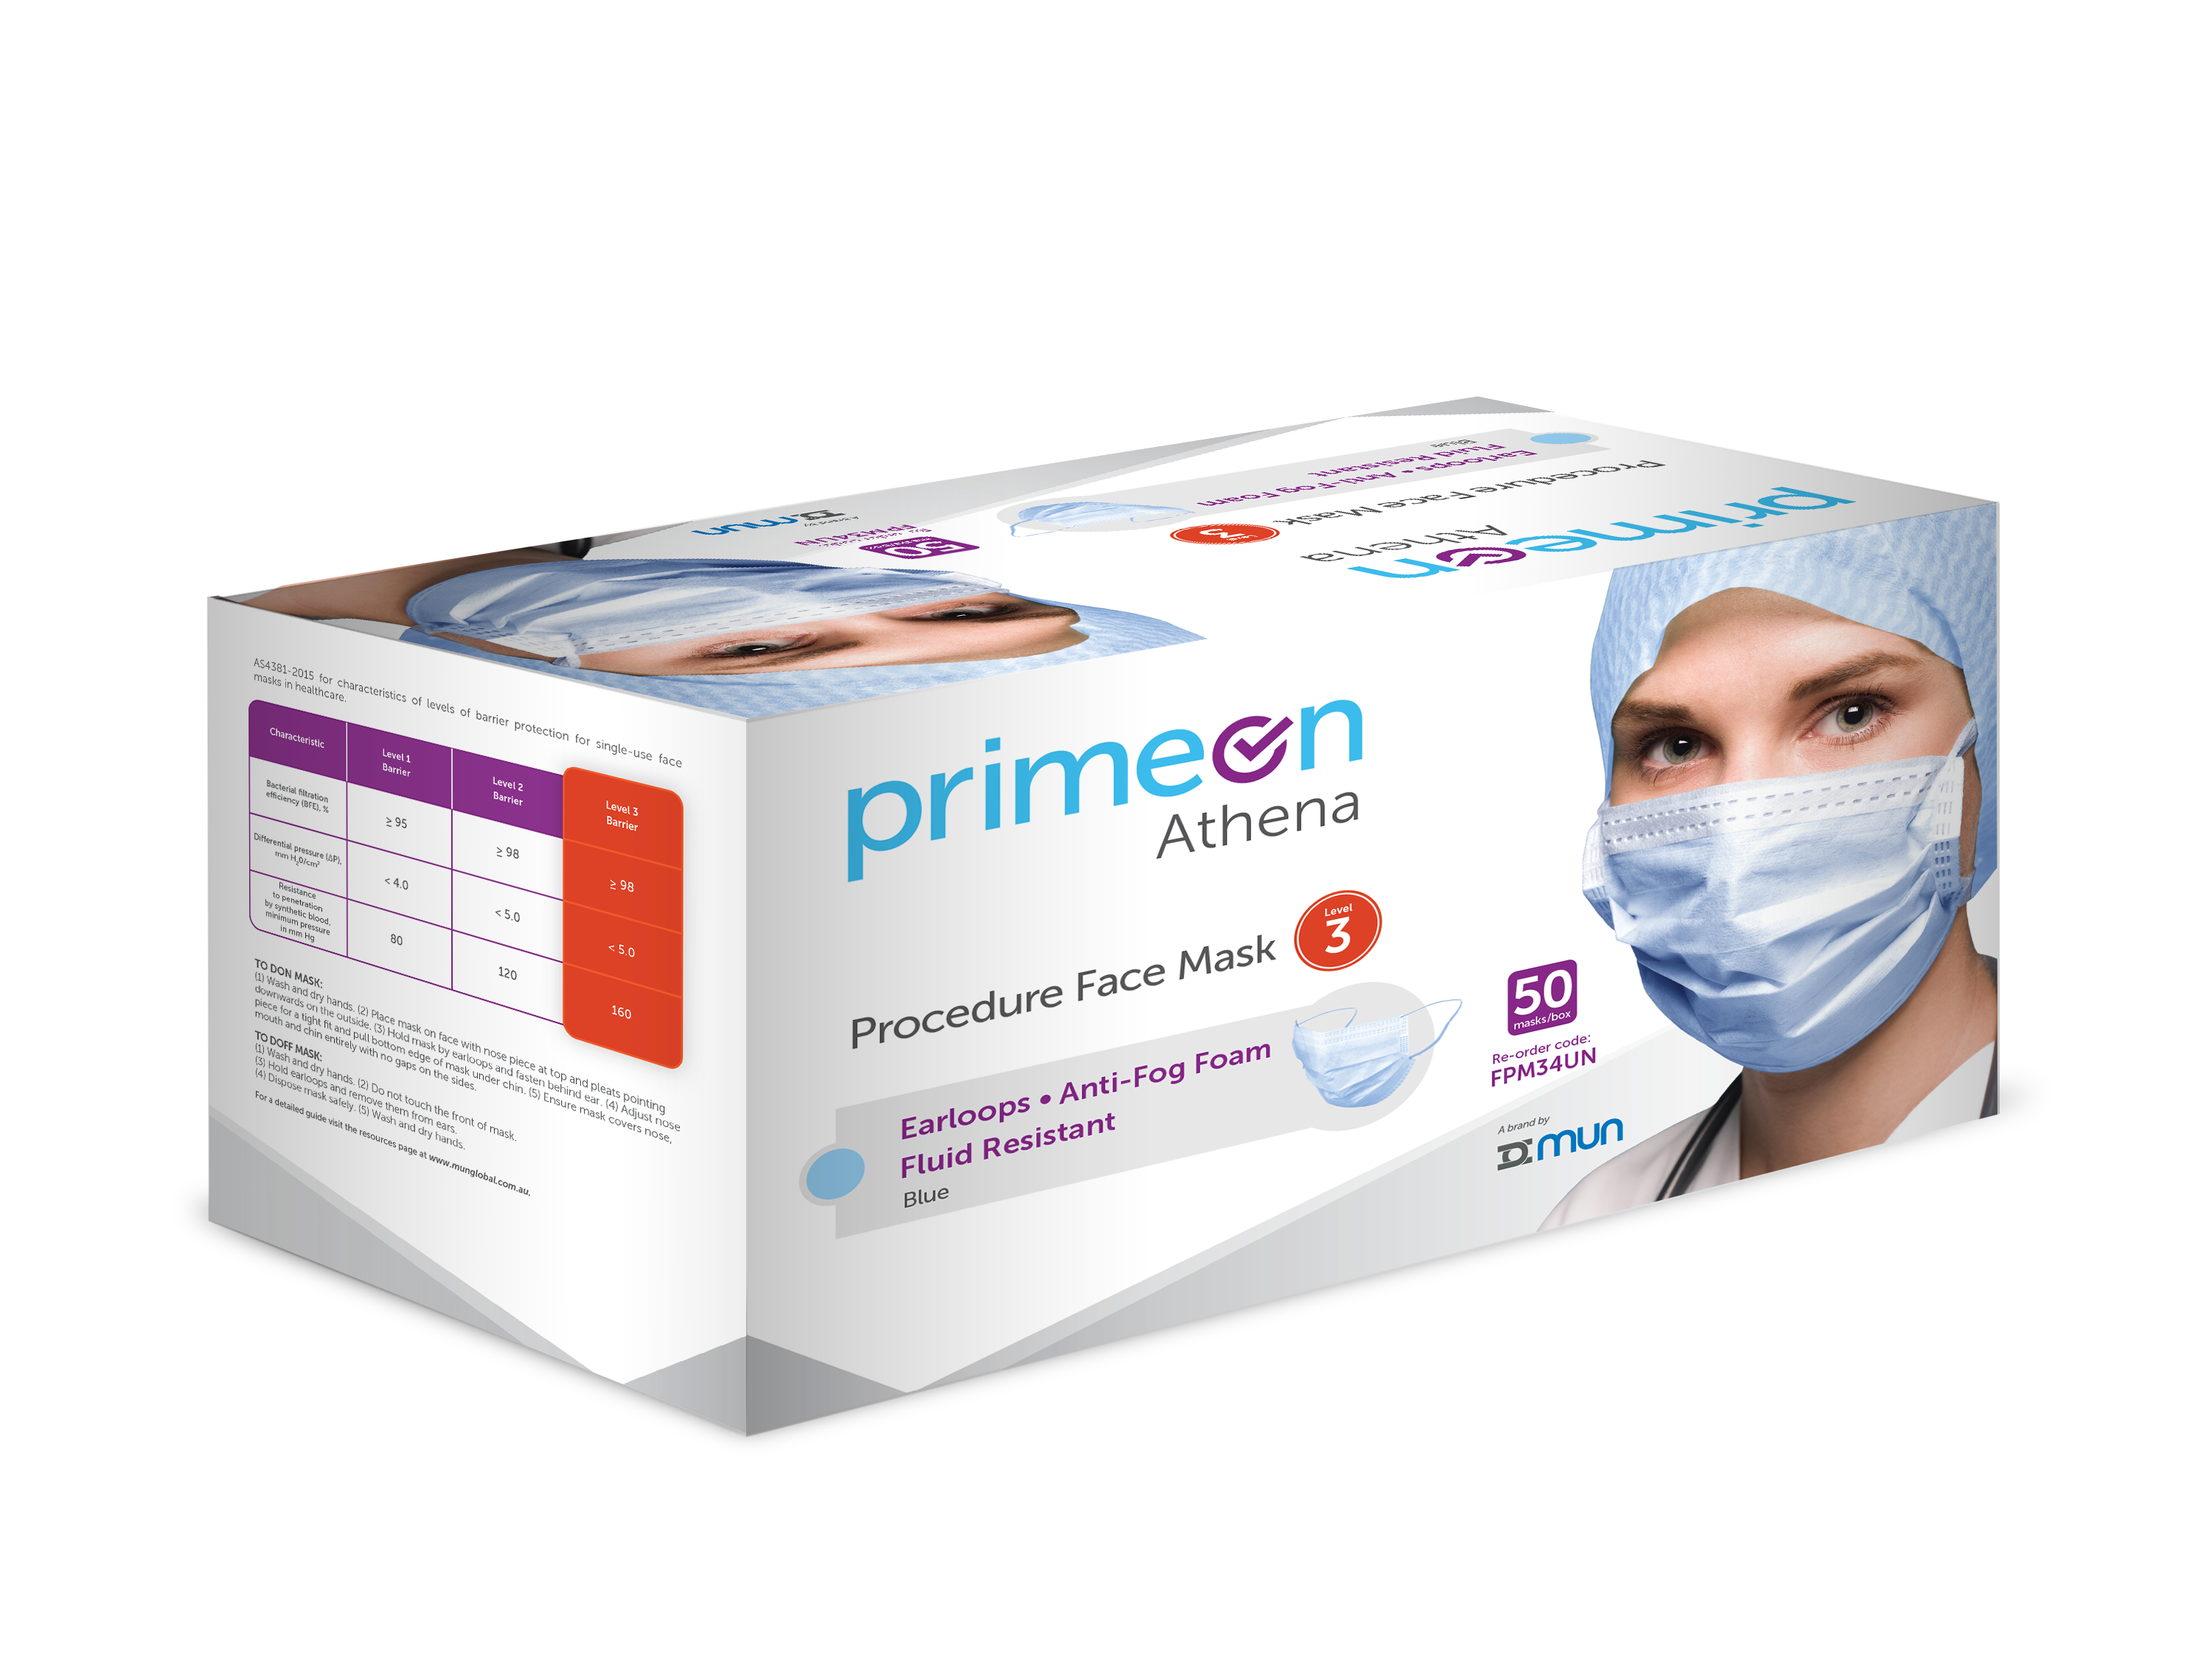 FPM34UN-Athena_Procedure_Face_Mask_Box.png